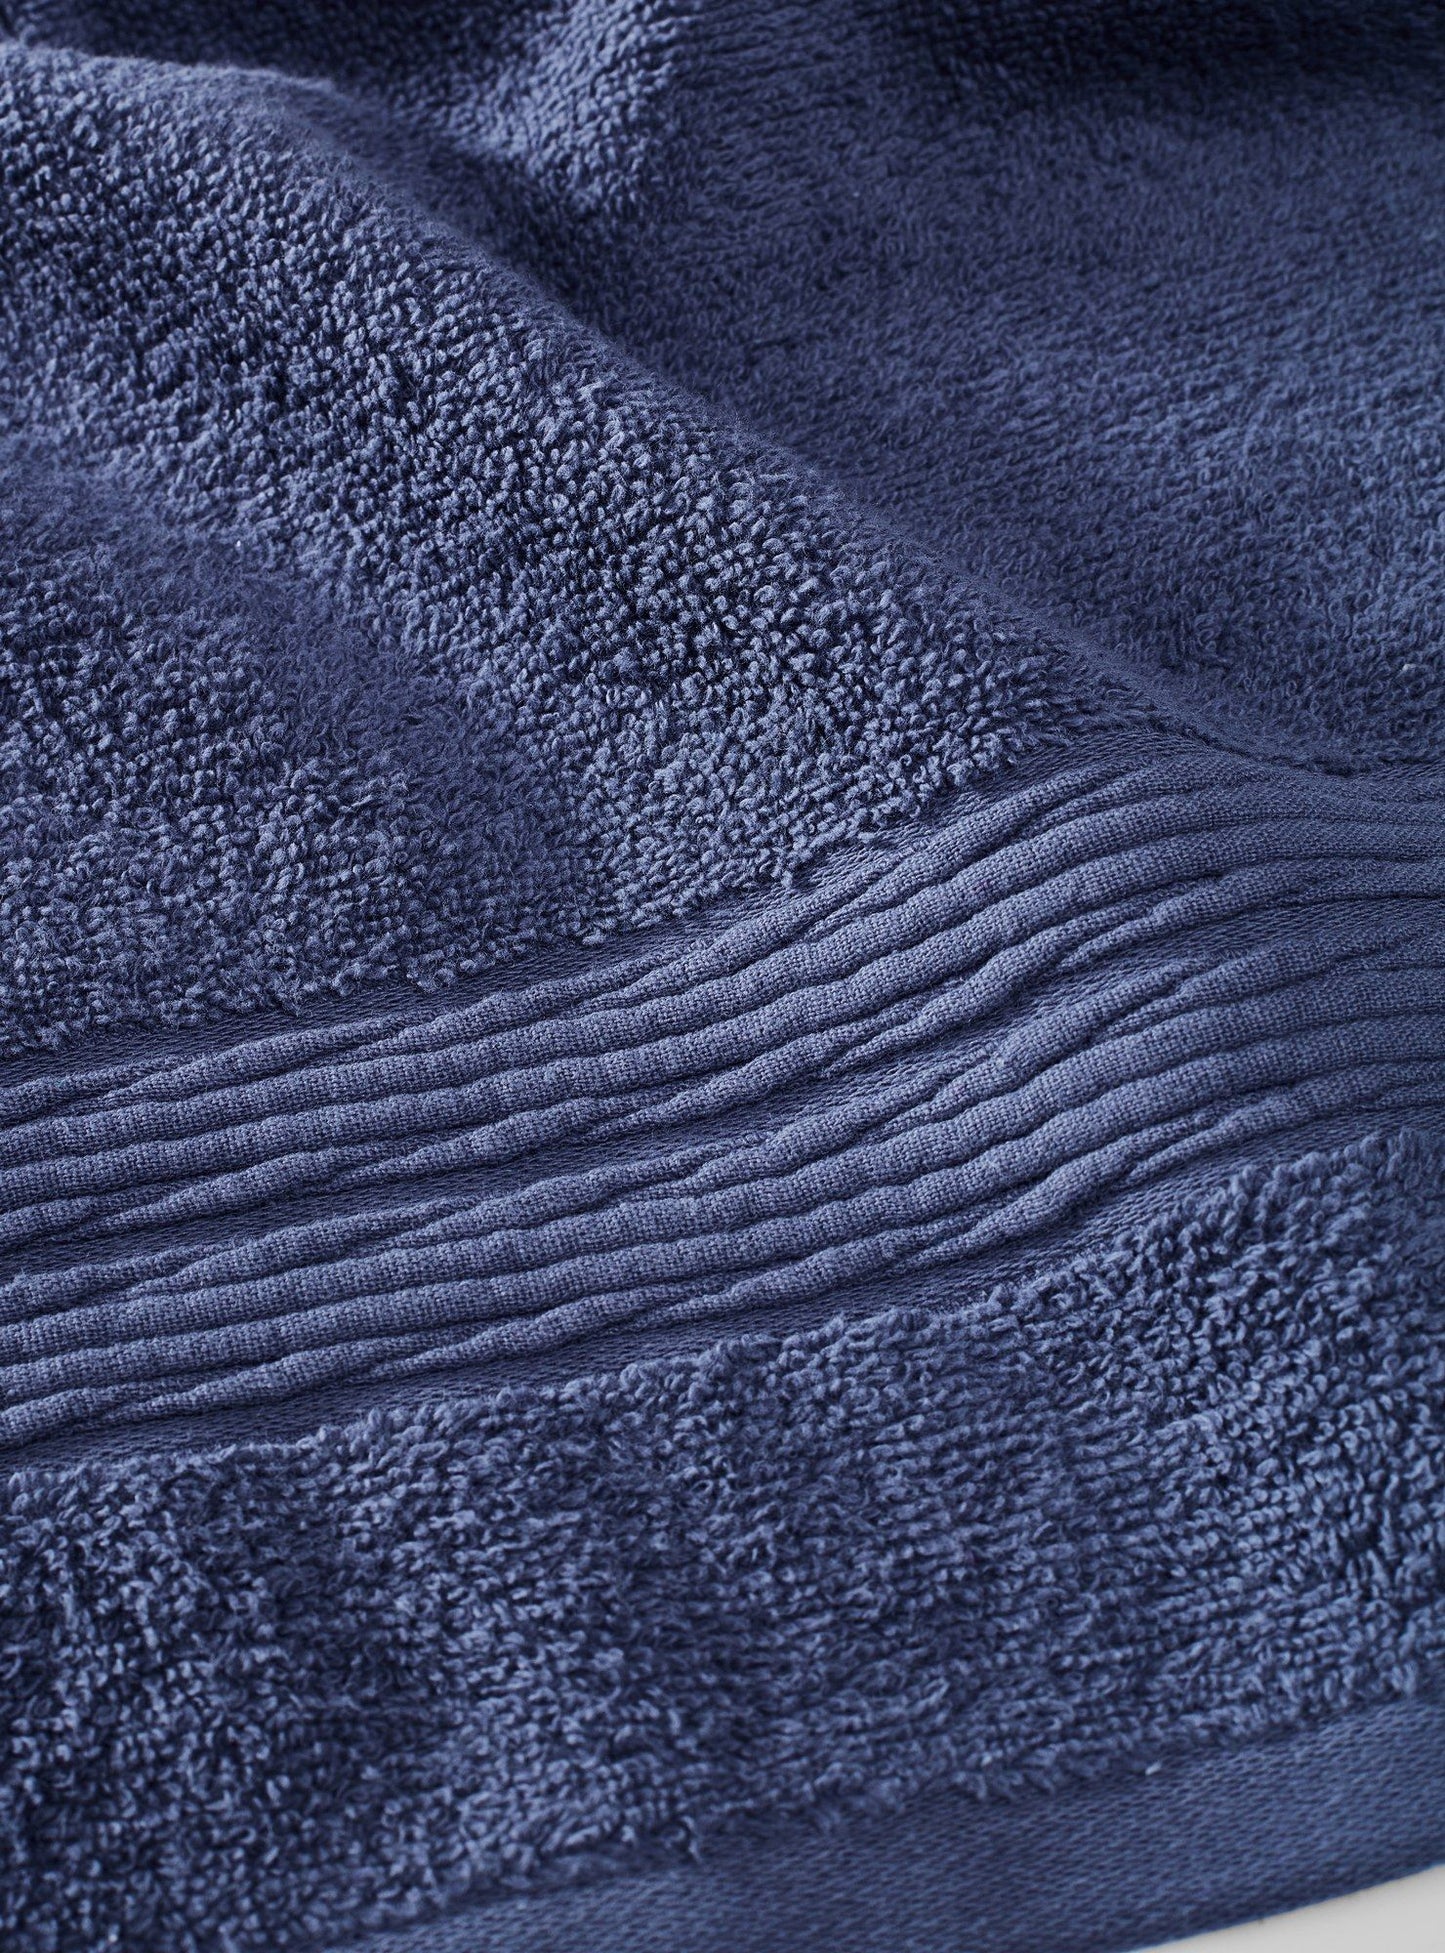 Håndklædesæt - Twist, Marineblå